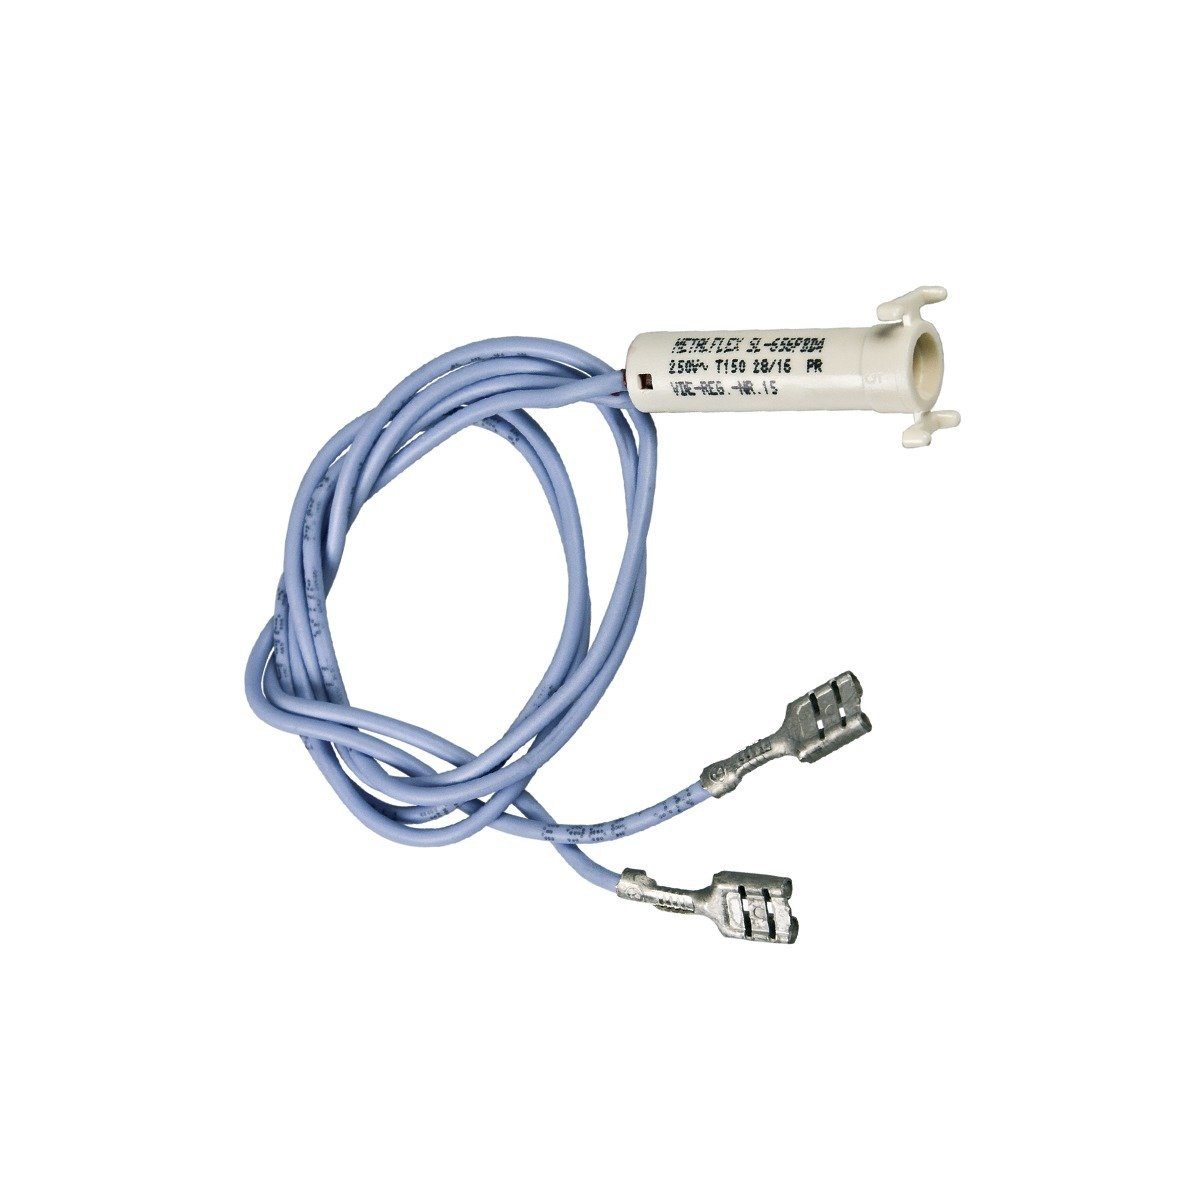 easyPART wie Electrolux 3570031264 Kontrolllampe mit Kabel Stromkabel, Für Backofen / Herd